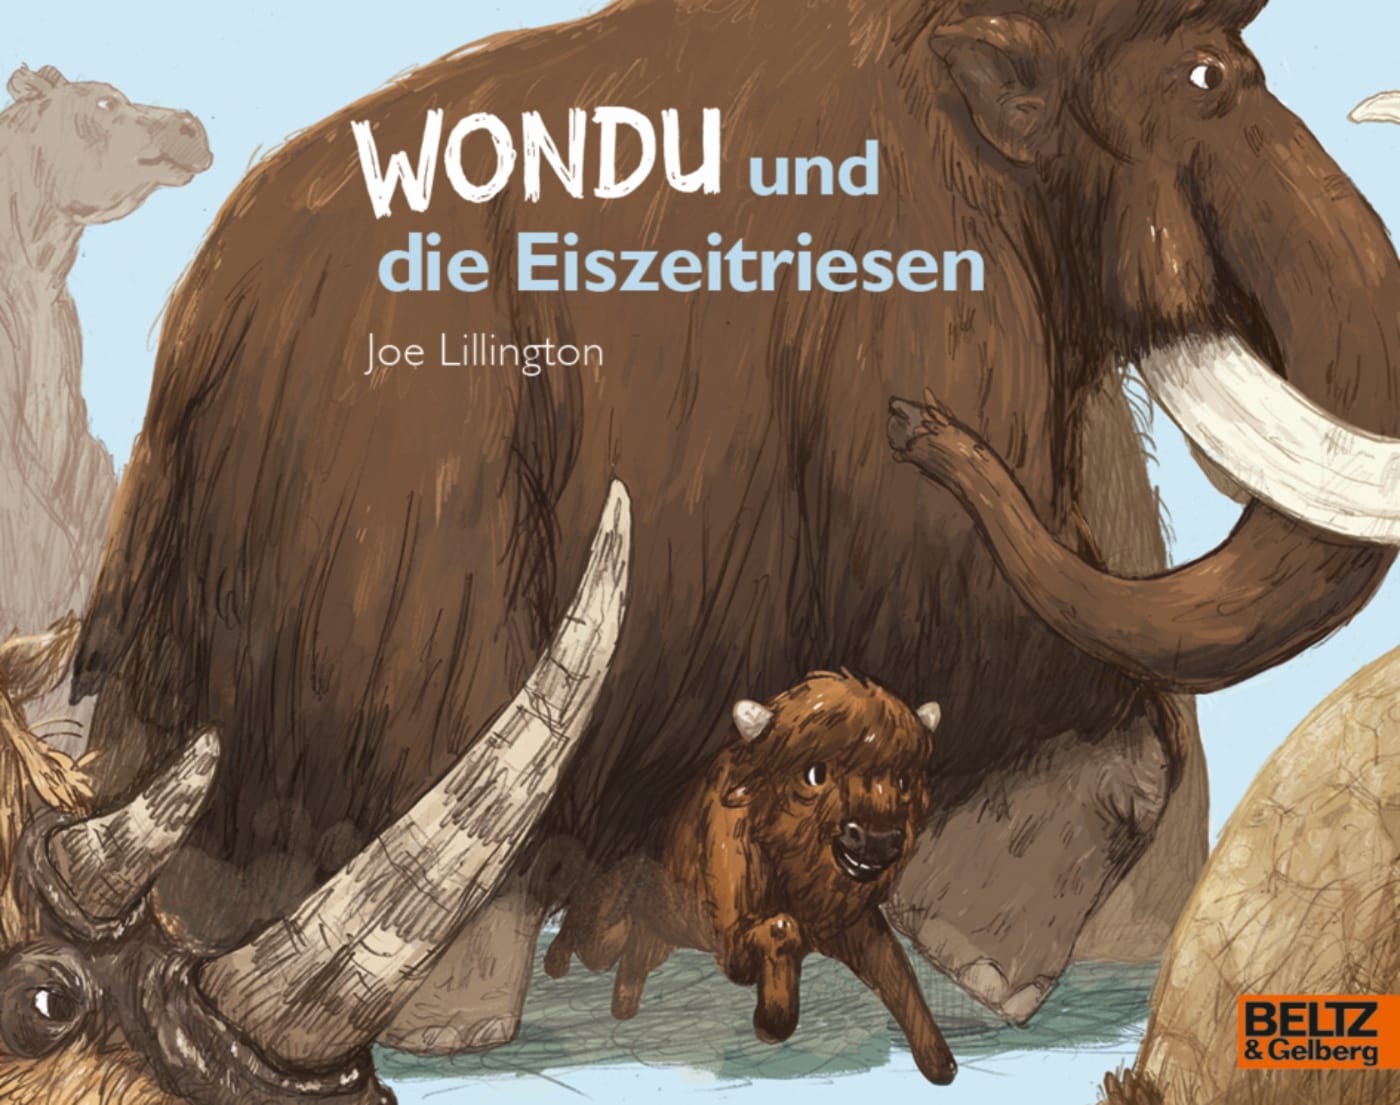 Kinderbuch-Tipp: Wondu Und Die Eiszeitriesen // Himbeer